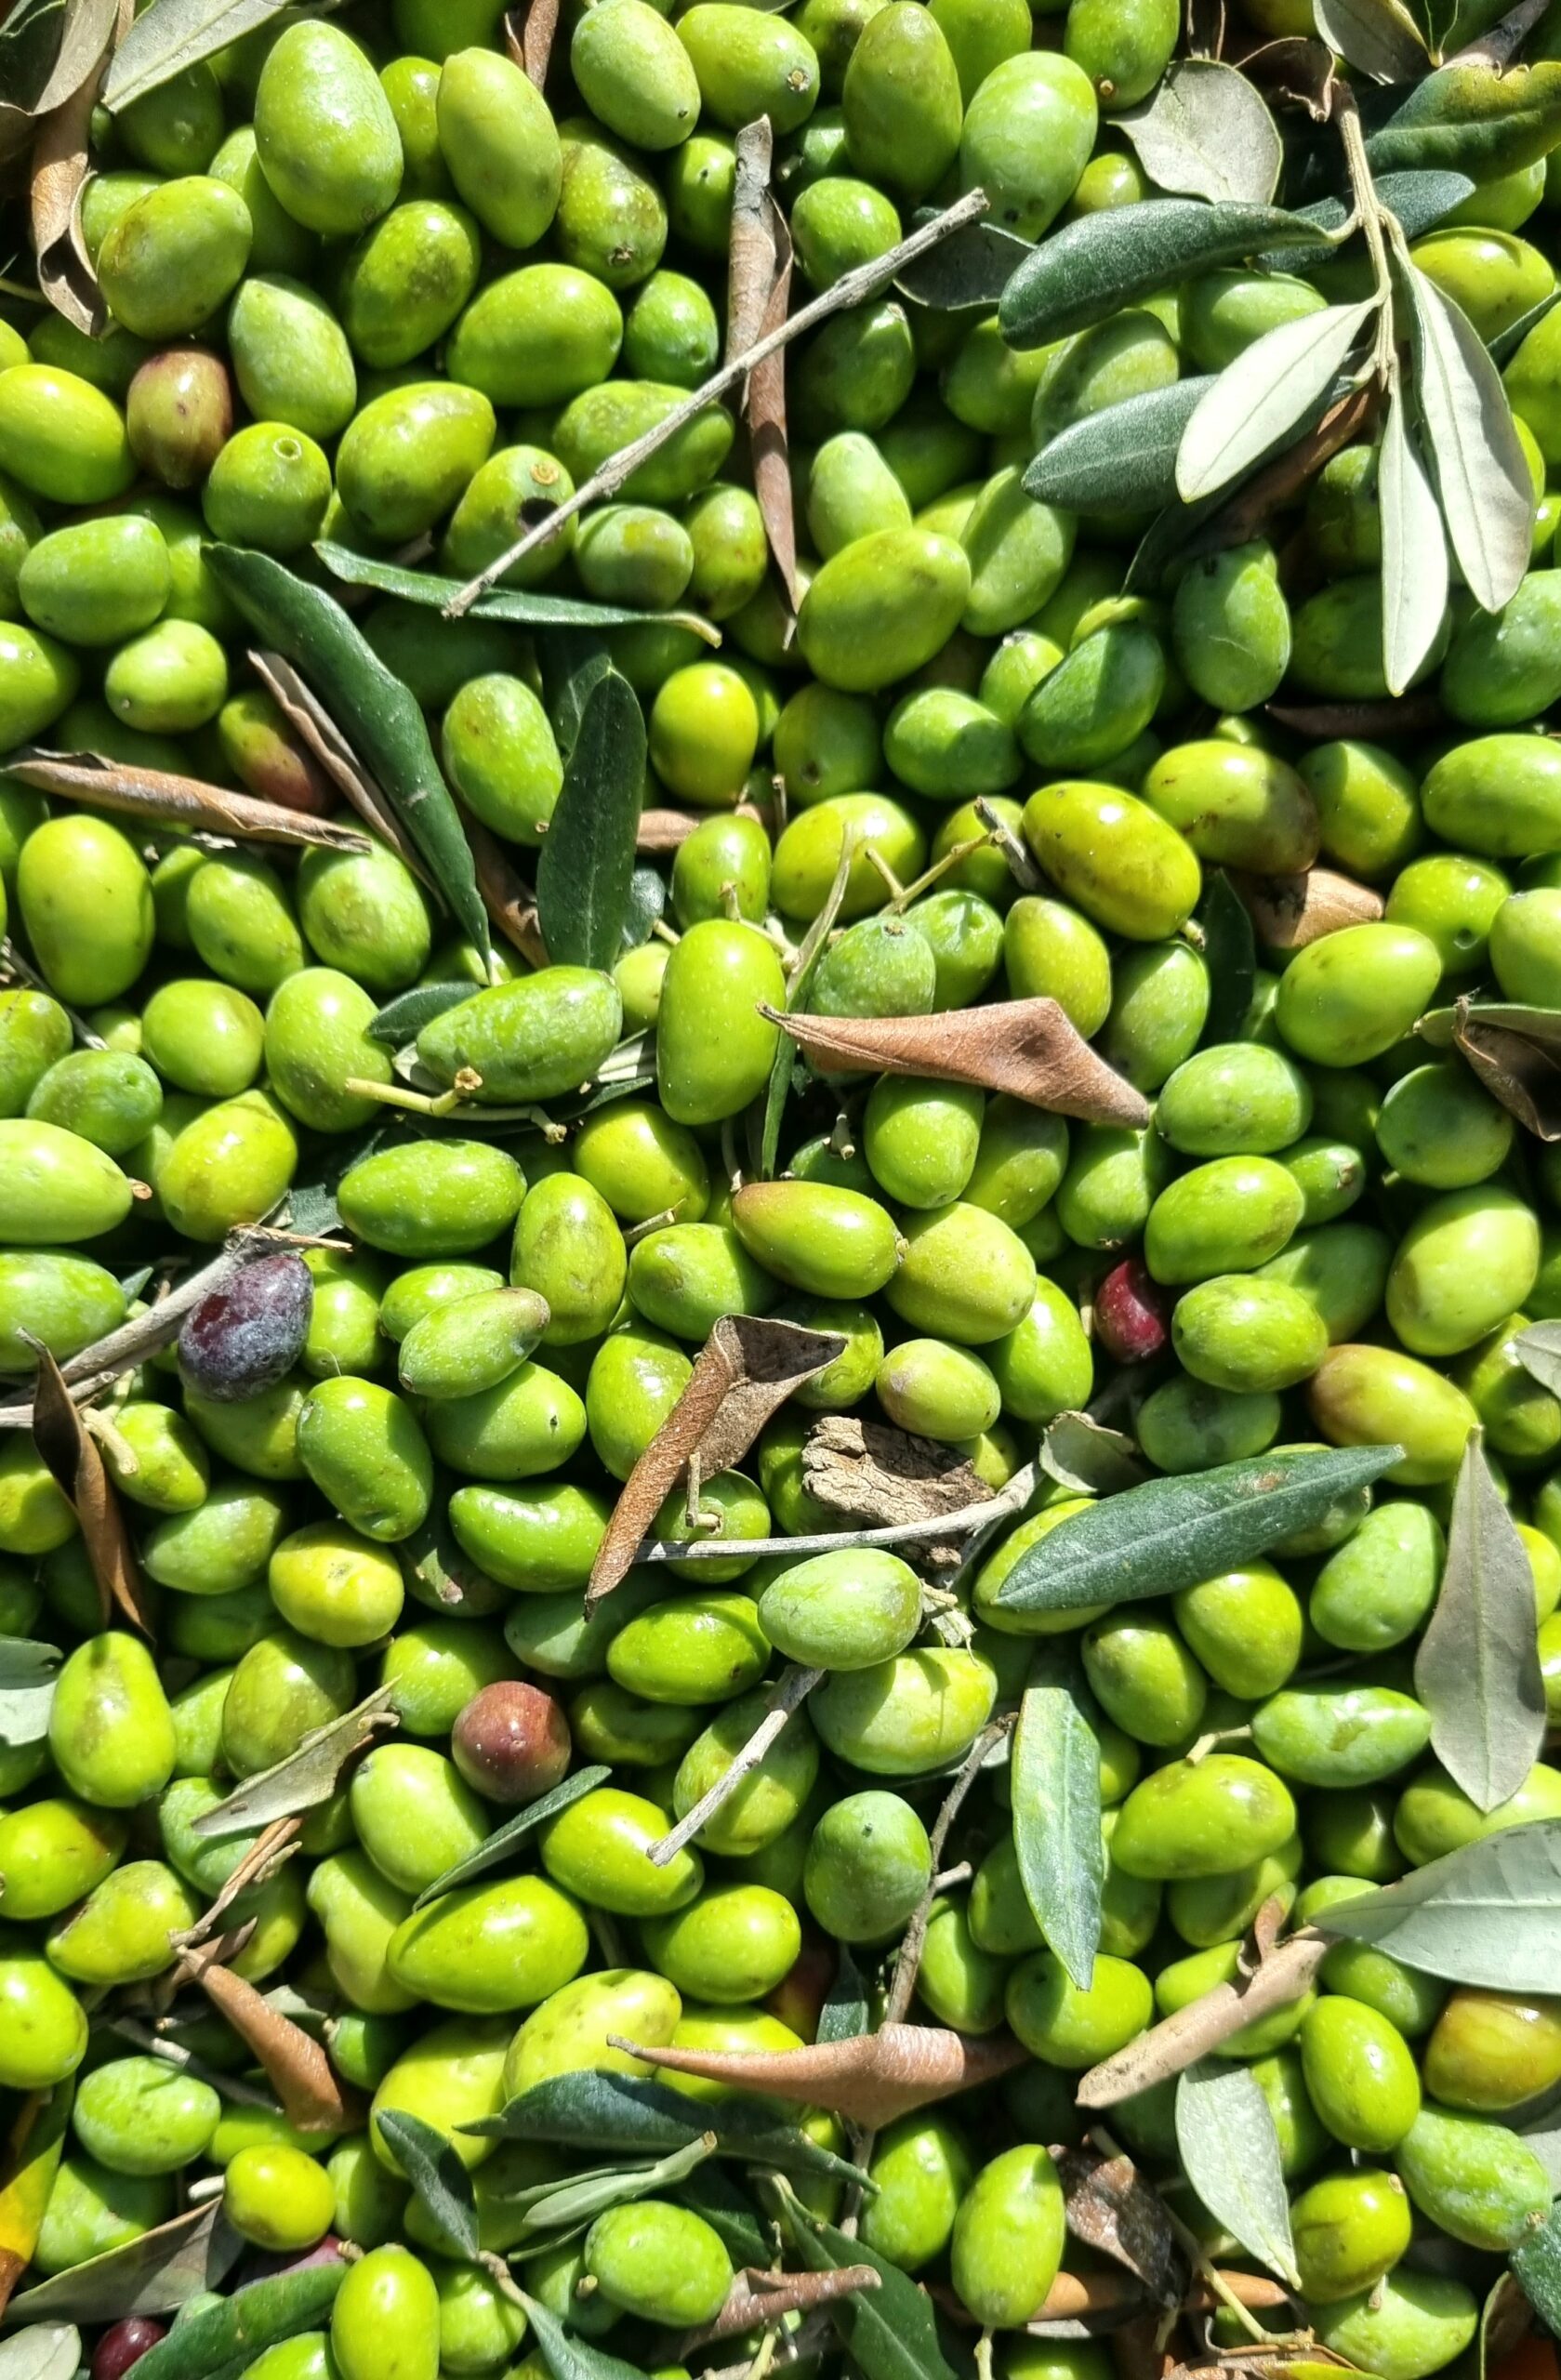 OLIè: ad aprile in Salento la manifestazione che profuma di olive